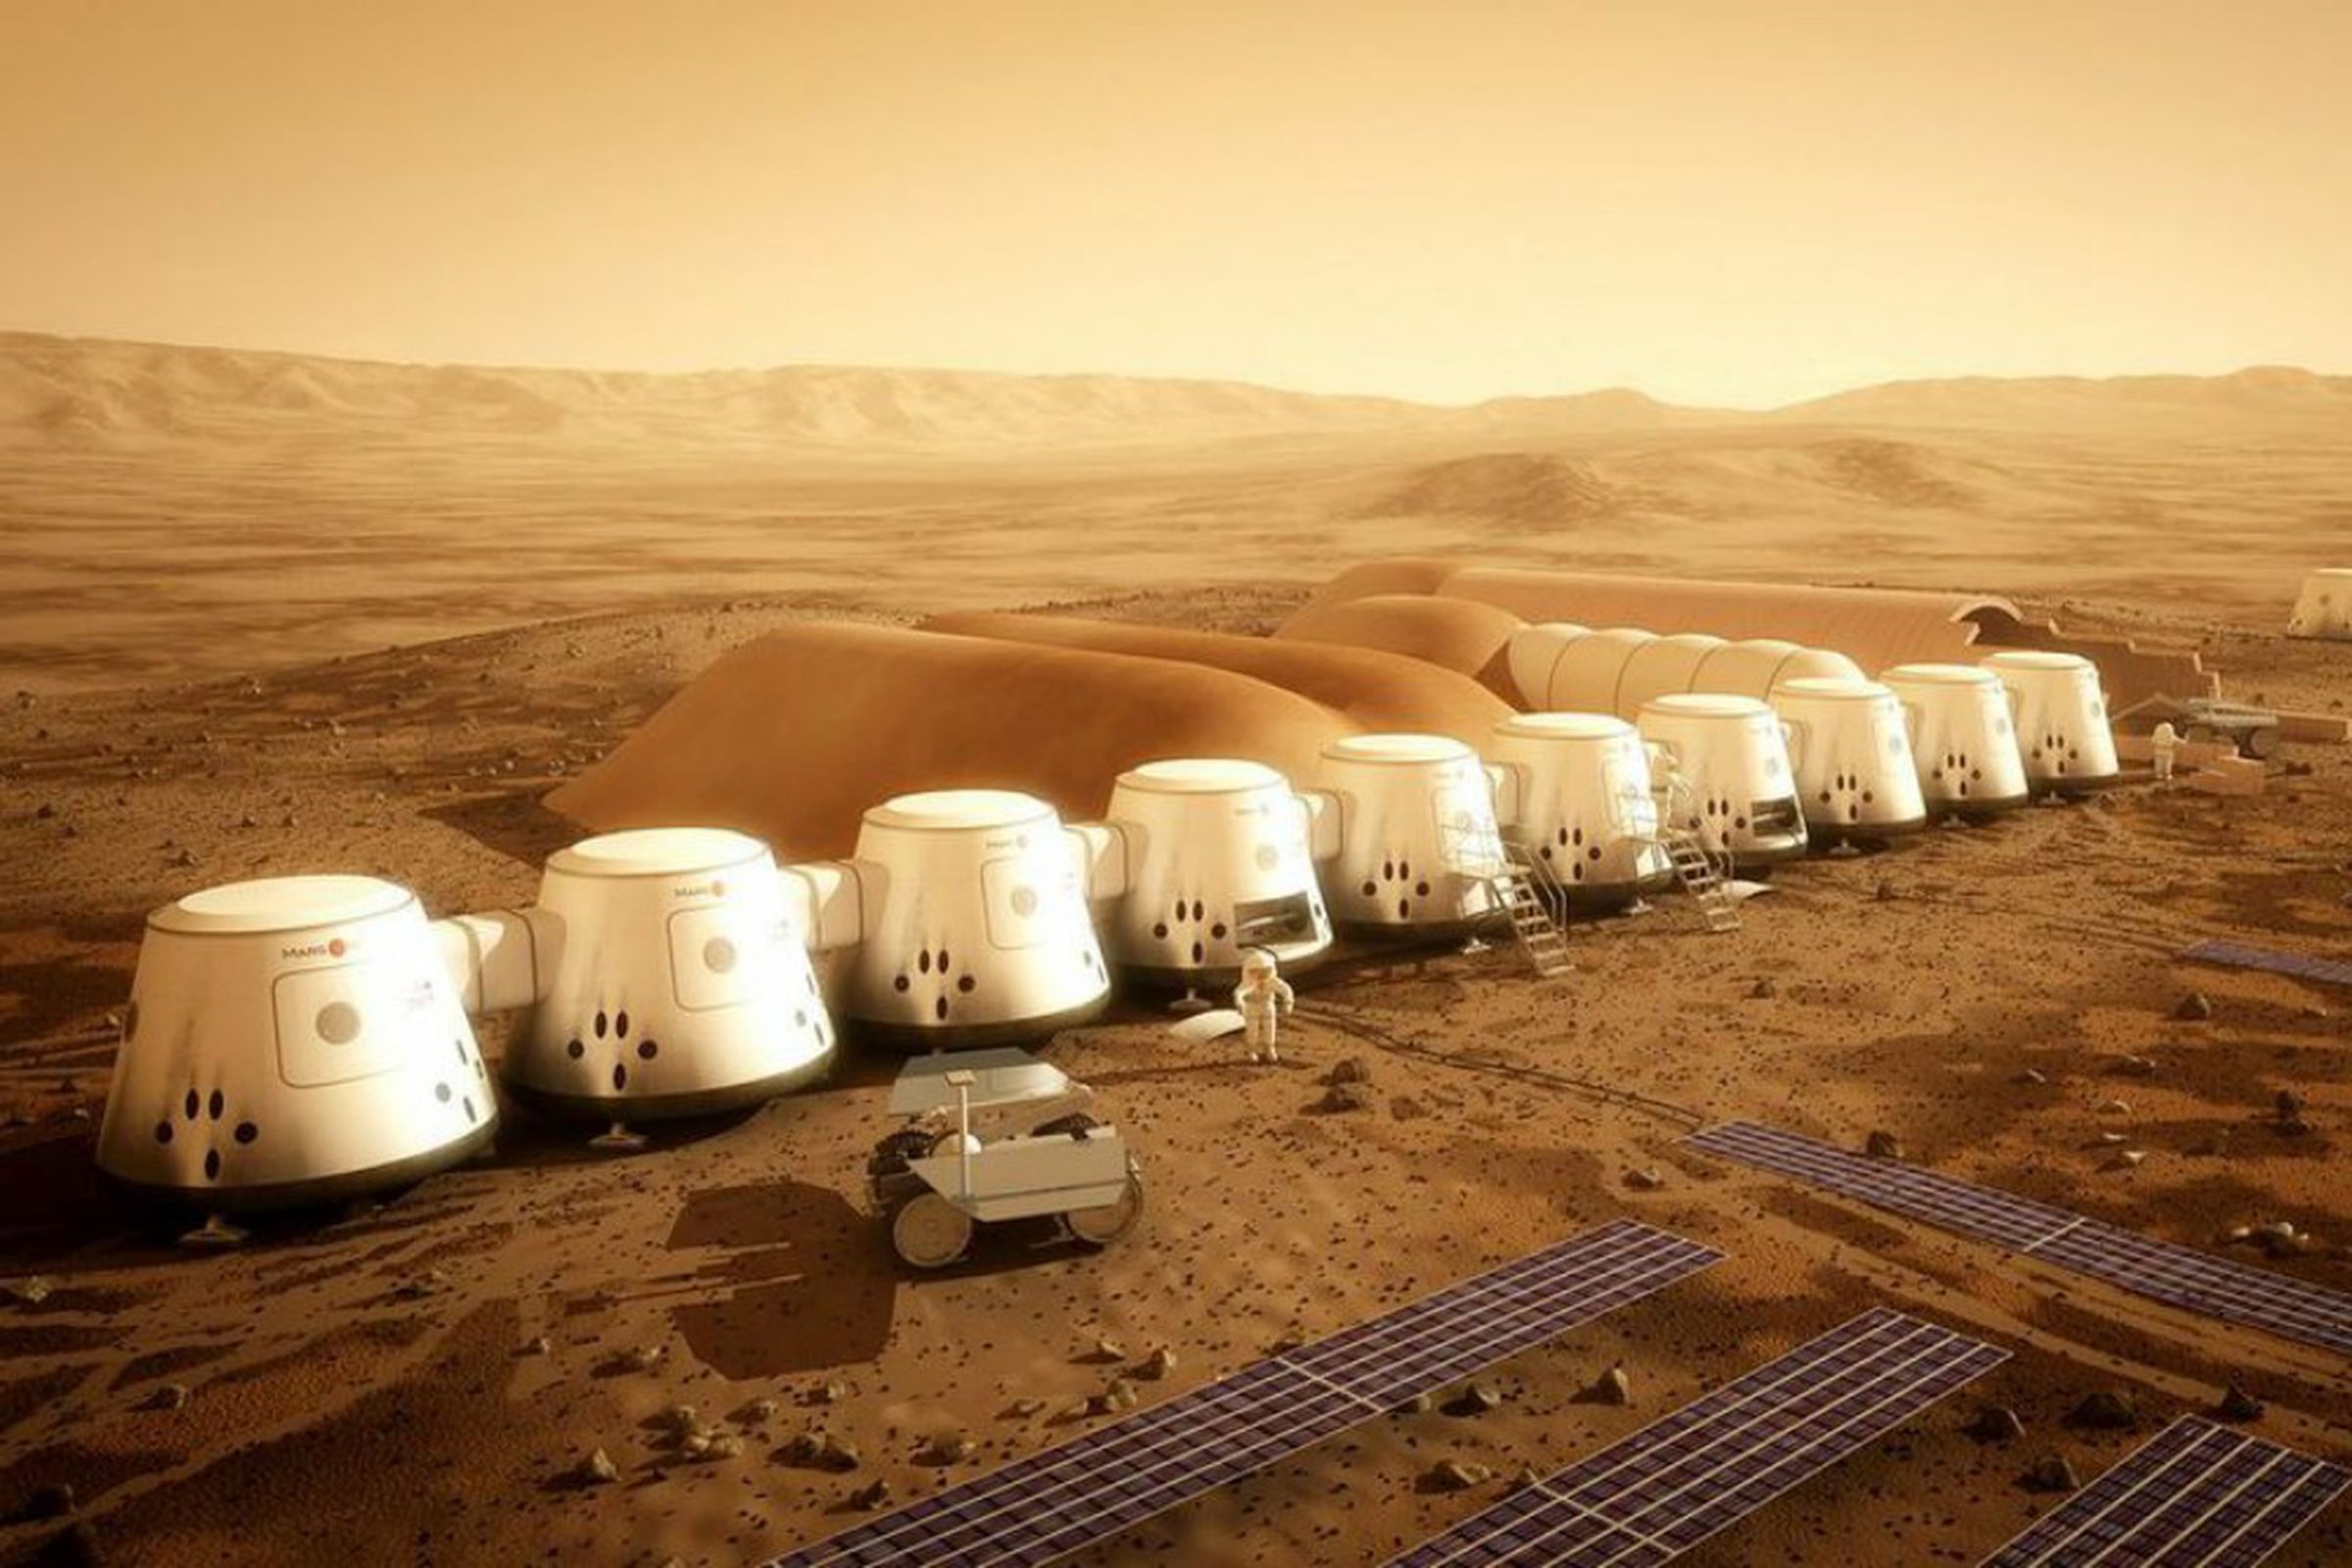 Mars One Colony